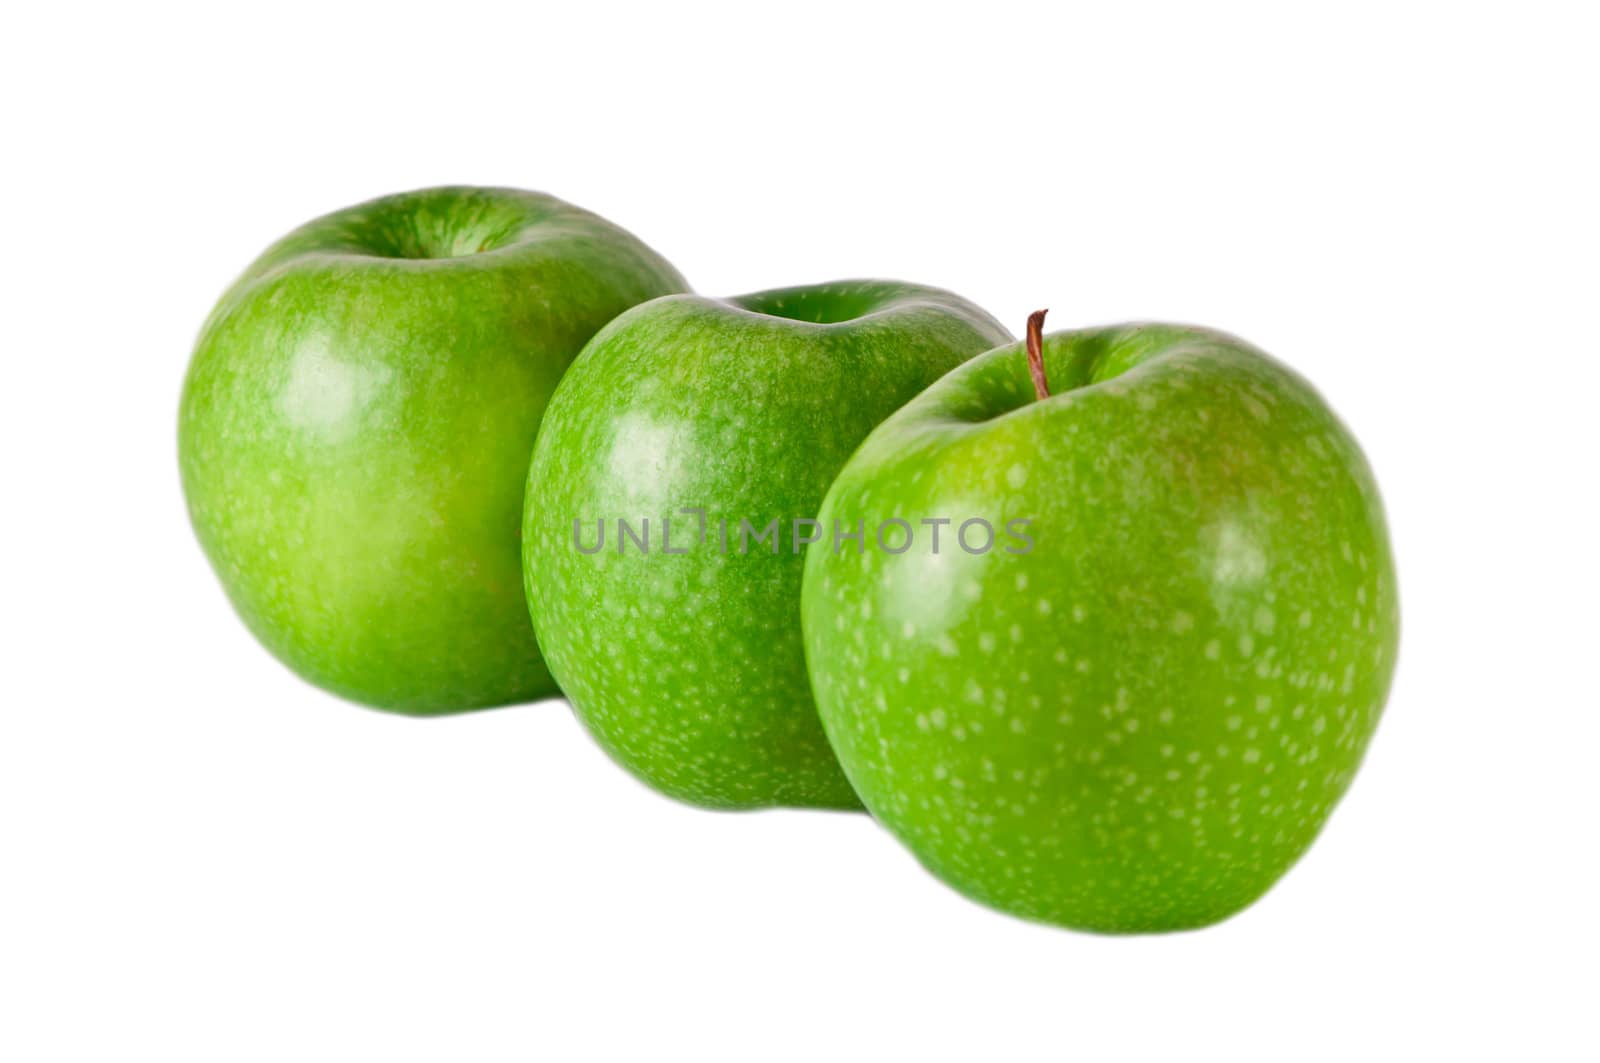 Green apple isolated on white. Fresh green apple. Sweet fruit.